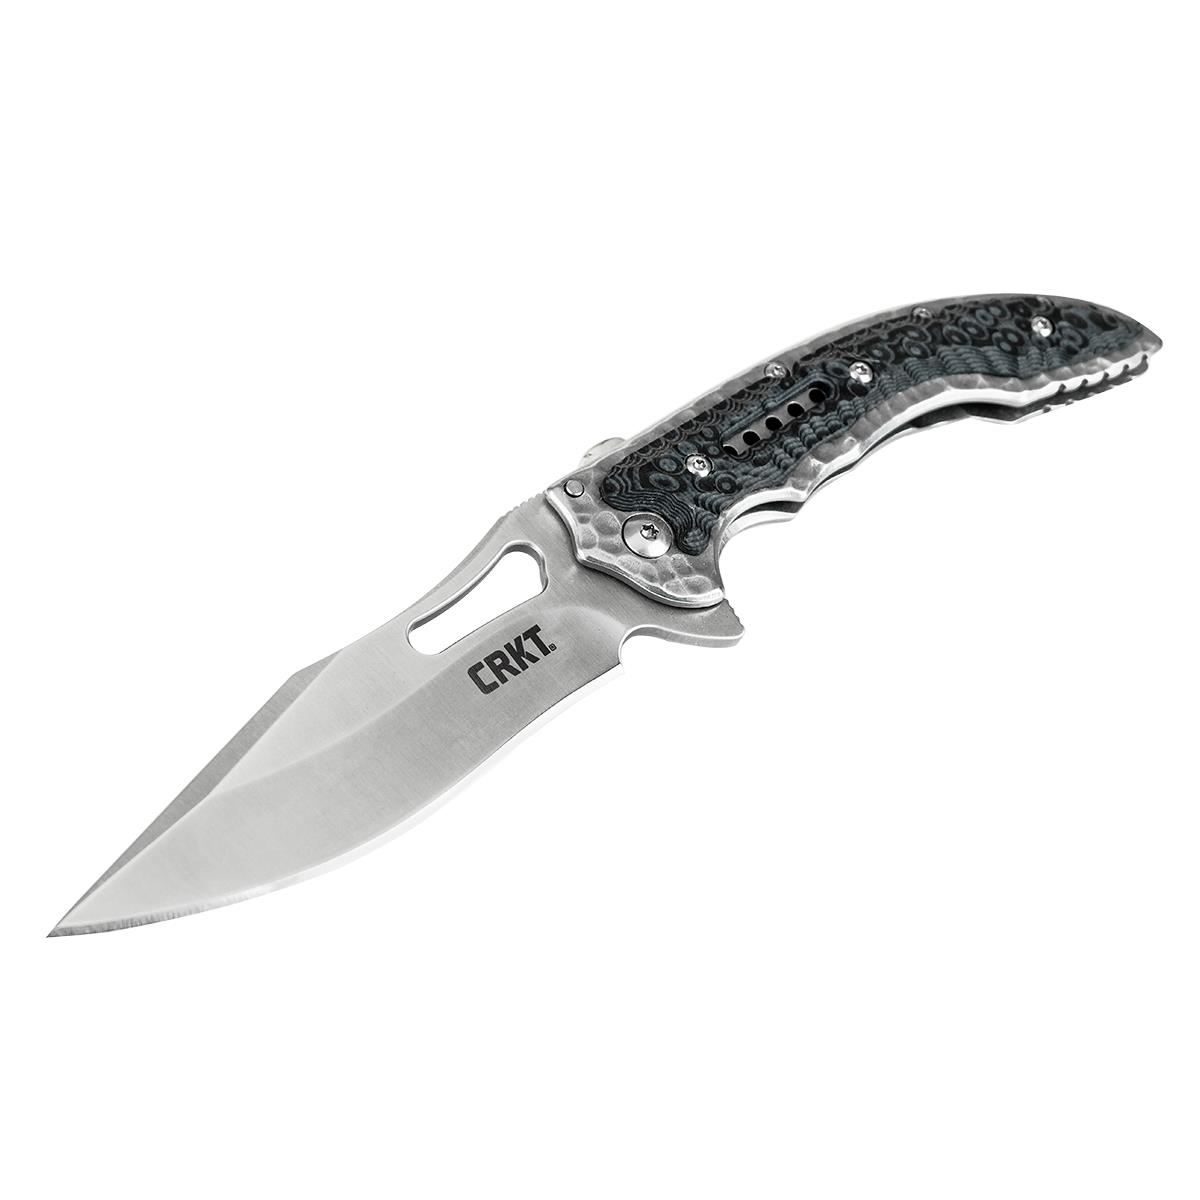 Нож Fossi складной, рук-ть сталь/G10, клинок 8Cr13MoV CRKT_5462 складной зонт zuodu